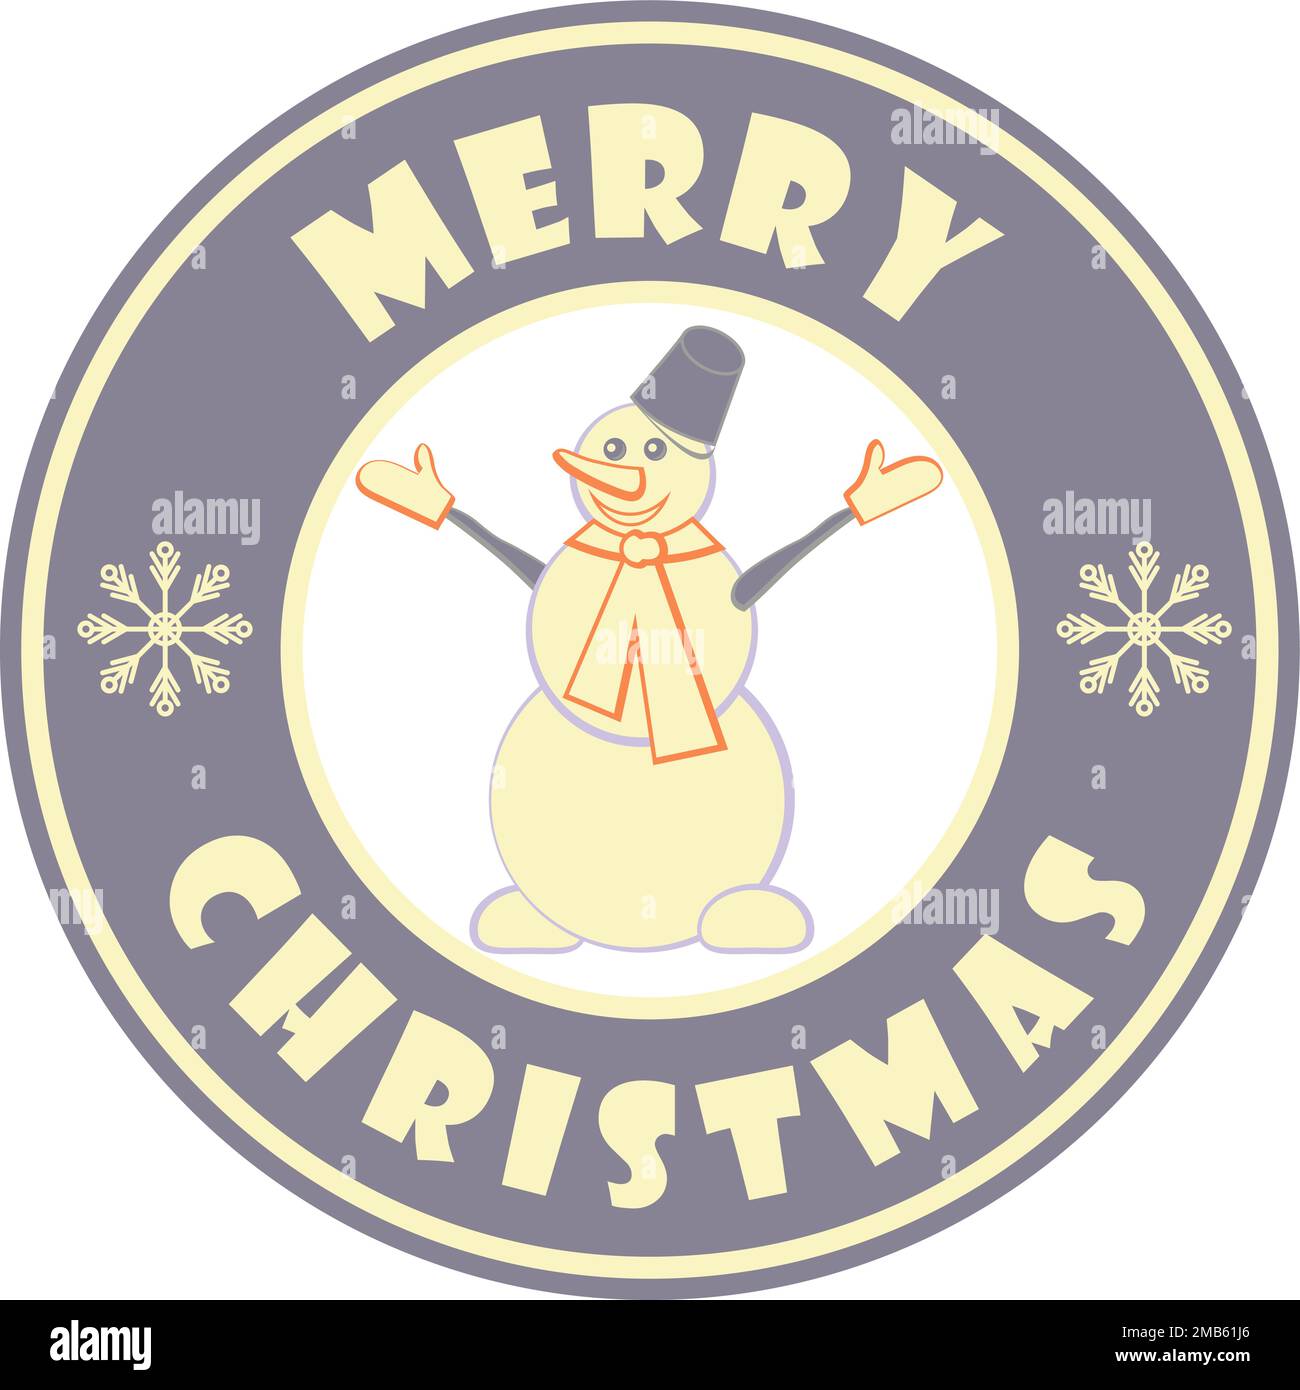 Jolis badges circulaires avec bonhomme de neige et texte de salutation Merry Christmas couleur pourpre Illustration de Vecteur